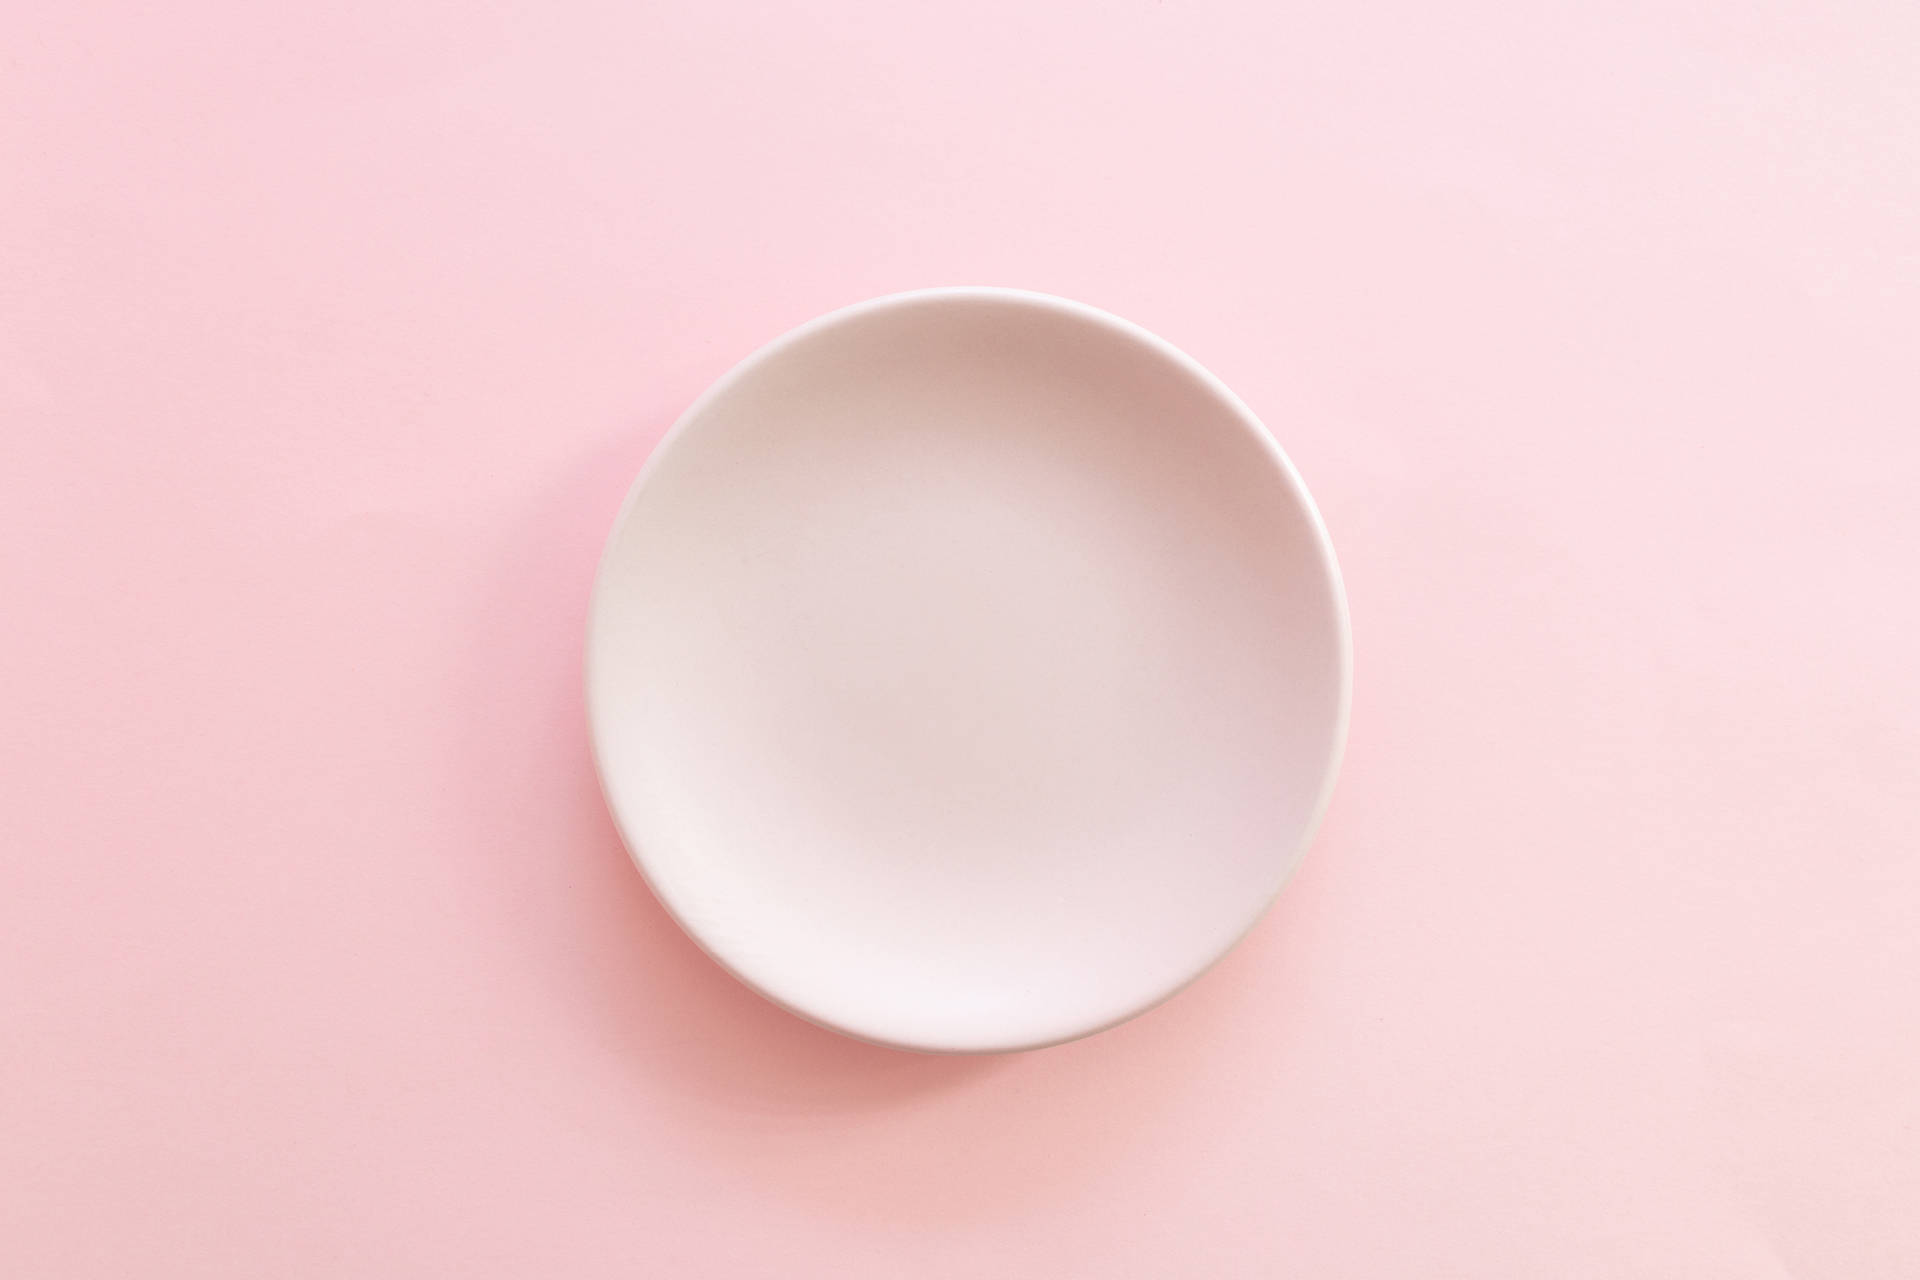 Minimalist Aesthetic Pink Plate